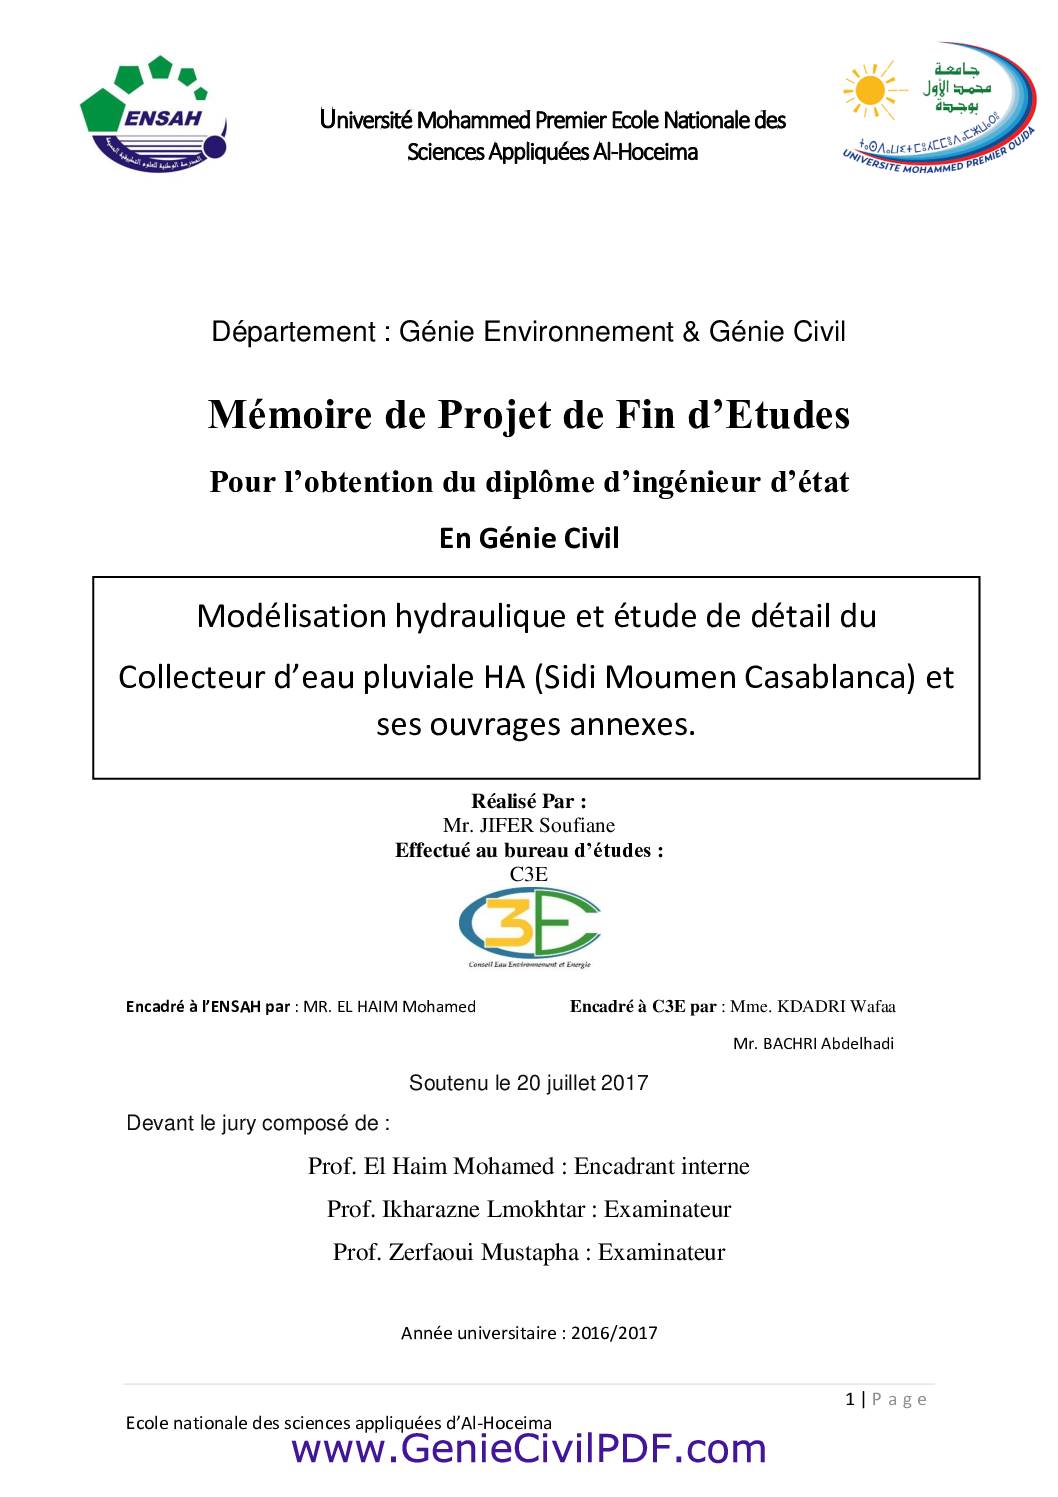 Modélisation hydraulique et étude de détail du Collecteur d’eau pluviale HA (Sidi Moumen Casablanca) et ses ouvrages annexes.